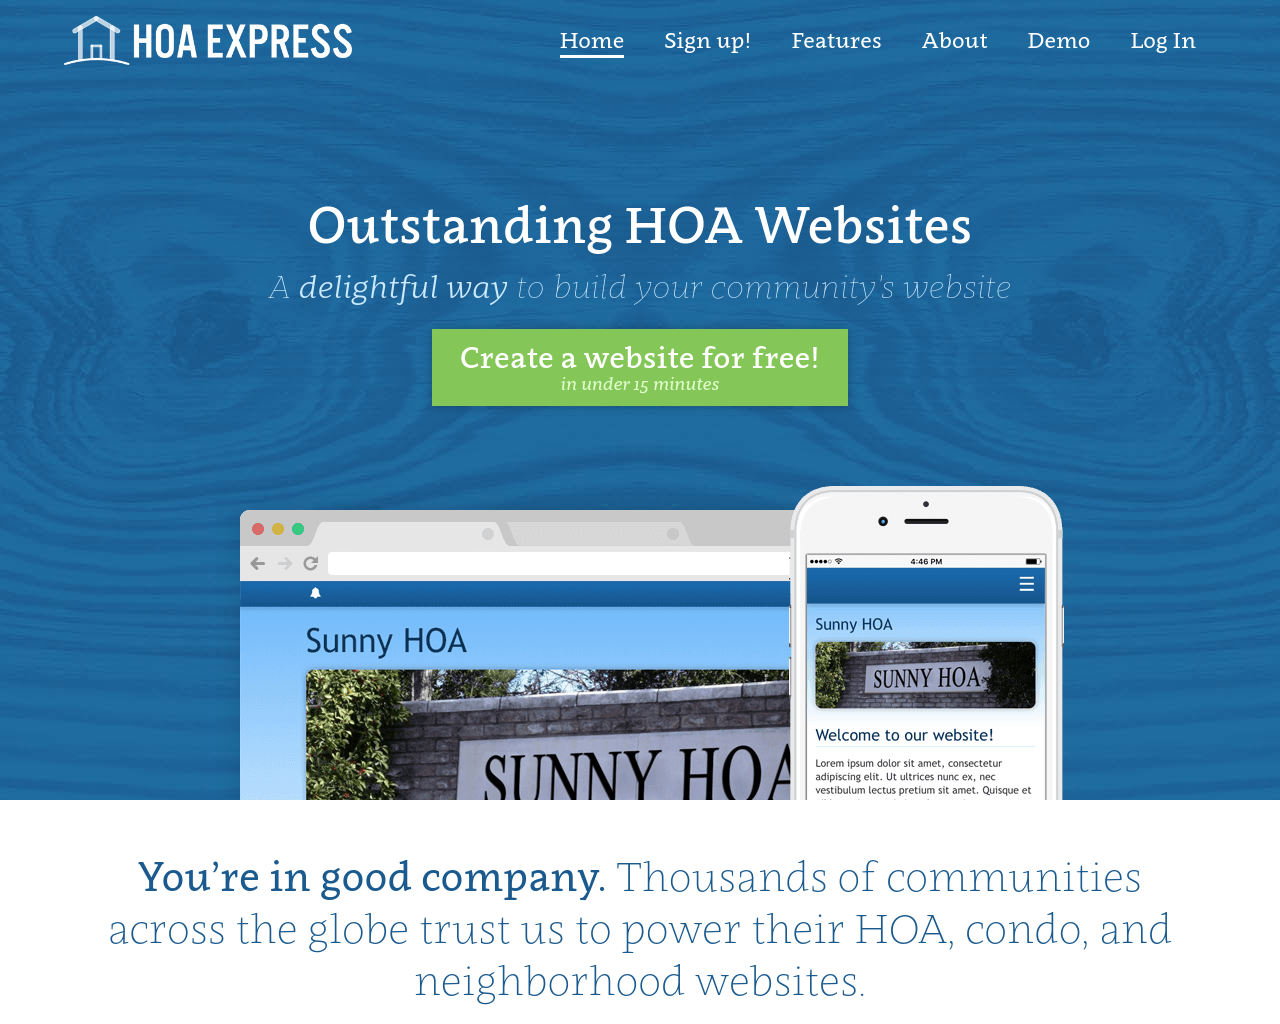 hoa-express.com